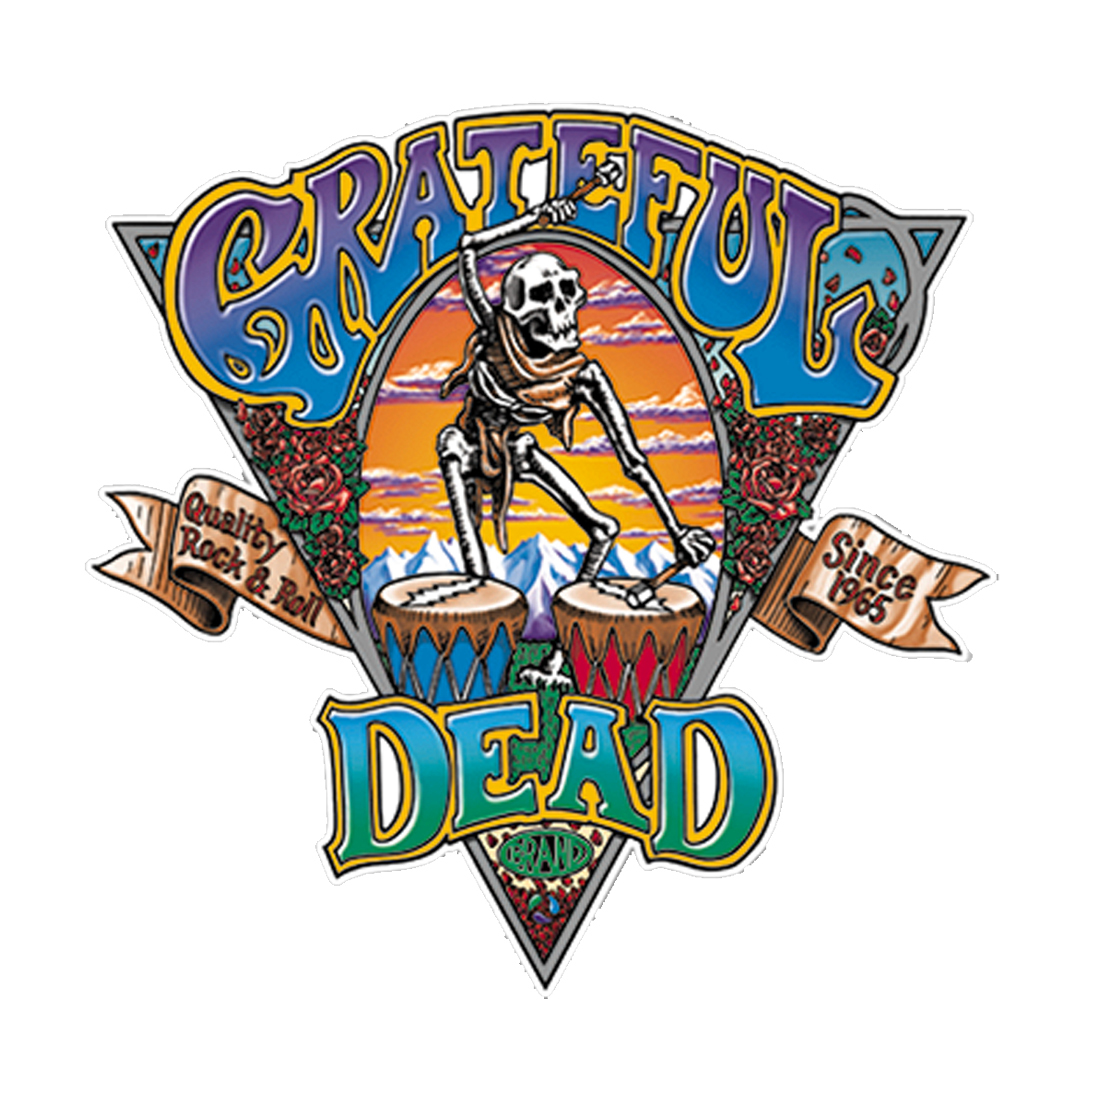 Download Grateful Dead Vector Art at Vectorified.com | Collection of Grateful Dead Vector Art free for ...